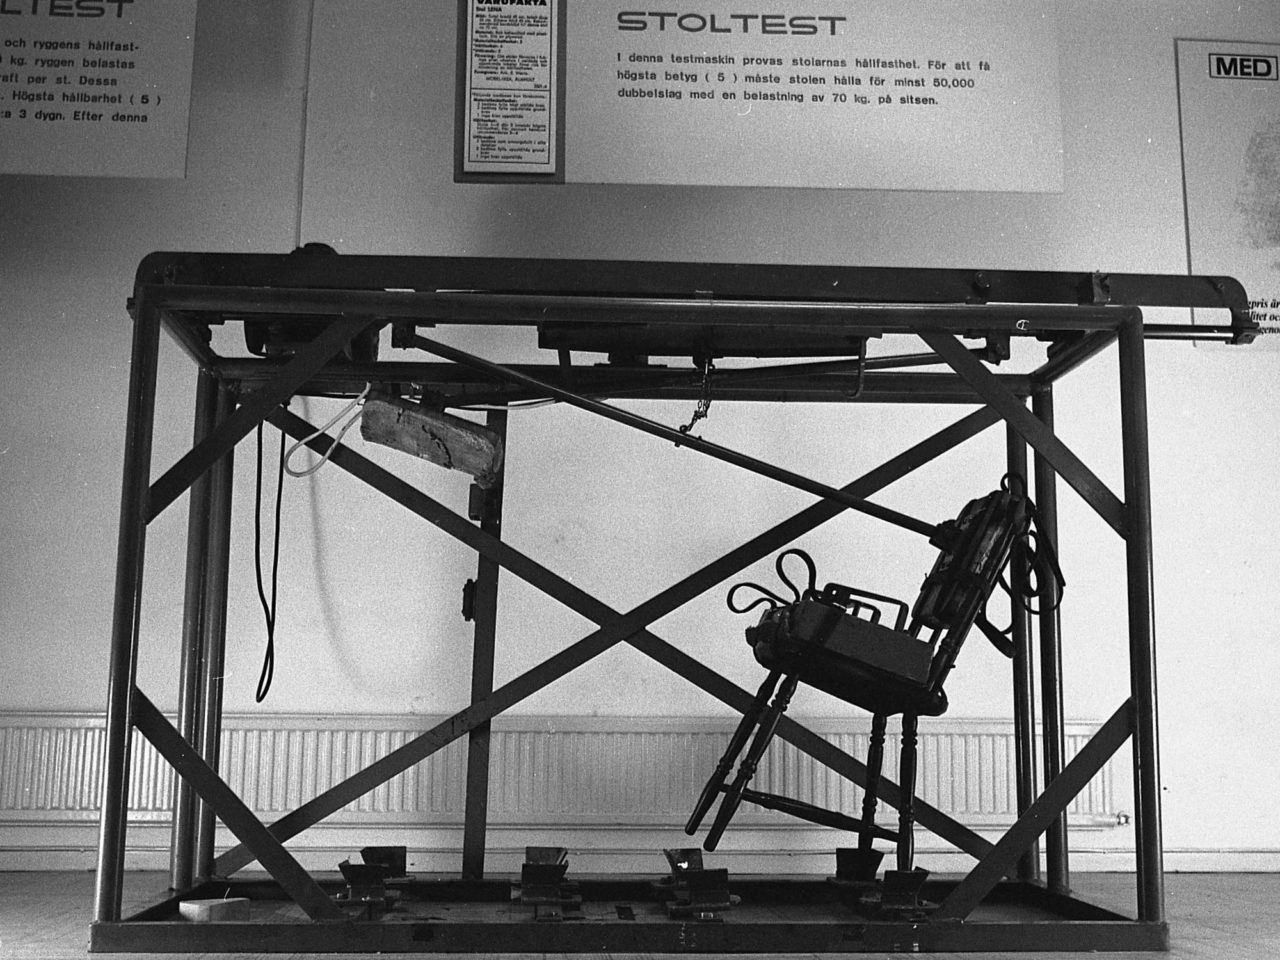 Stor testmaskin i vilken en stol är fastsatt. Ovanför sitter en skylt med texten 